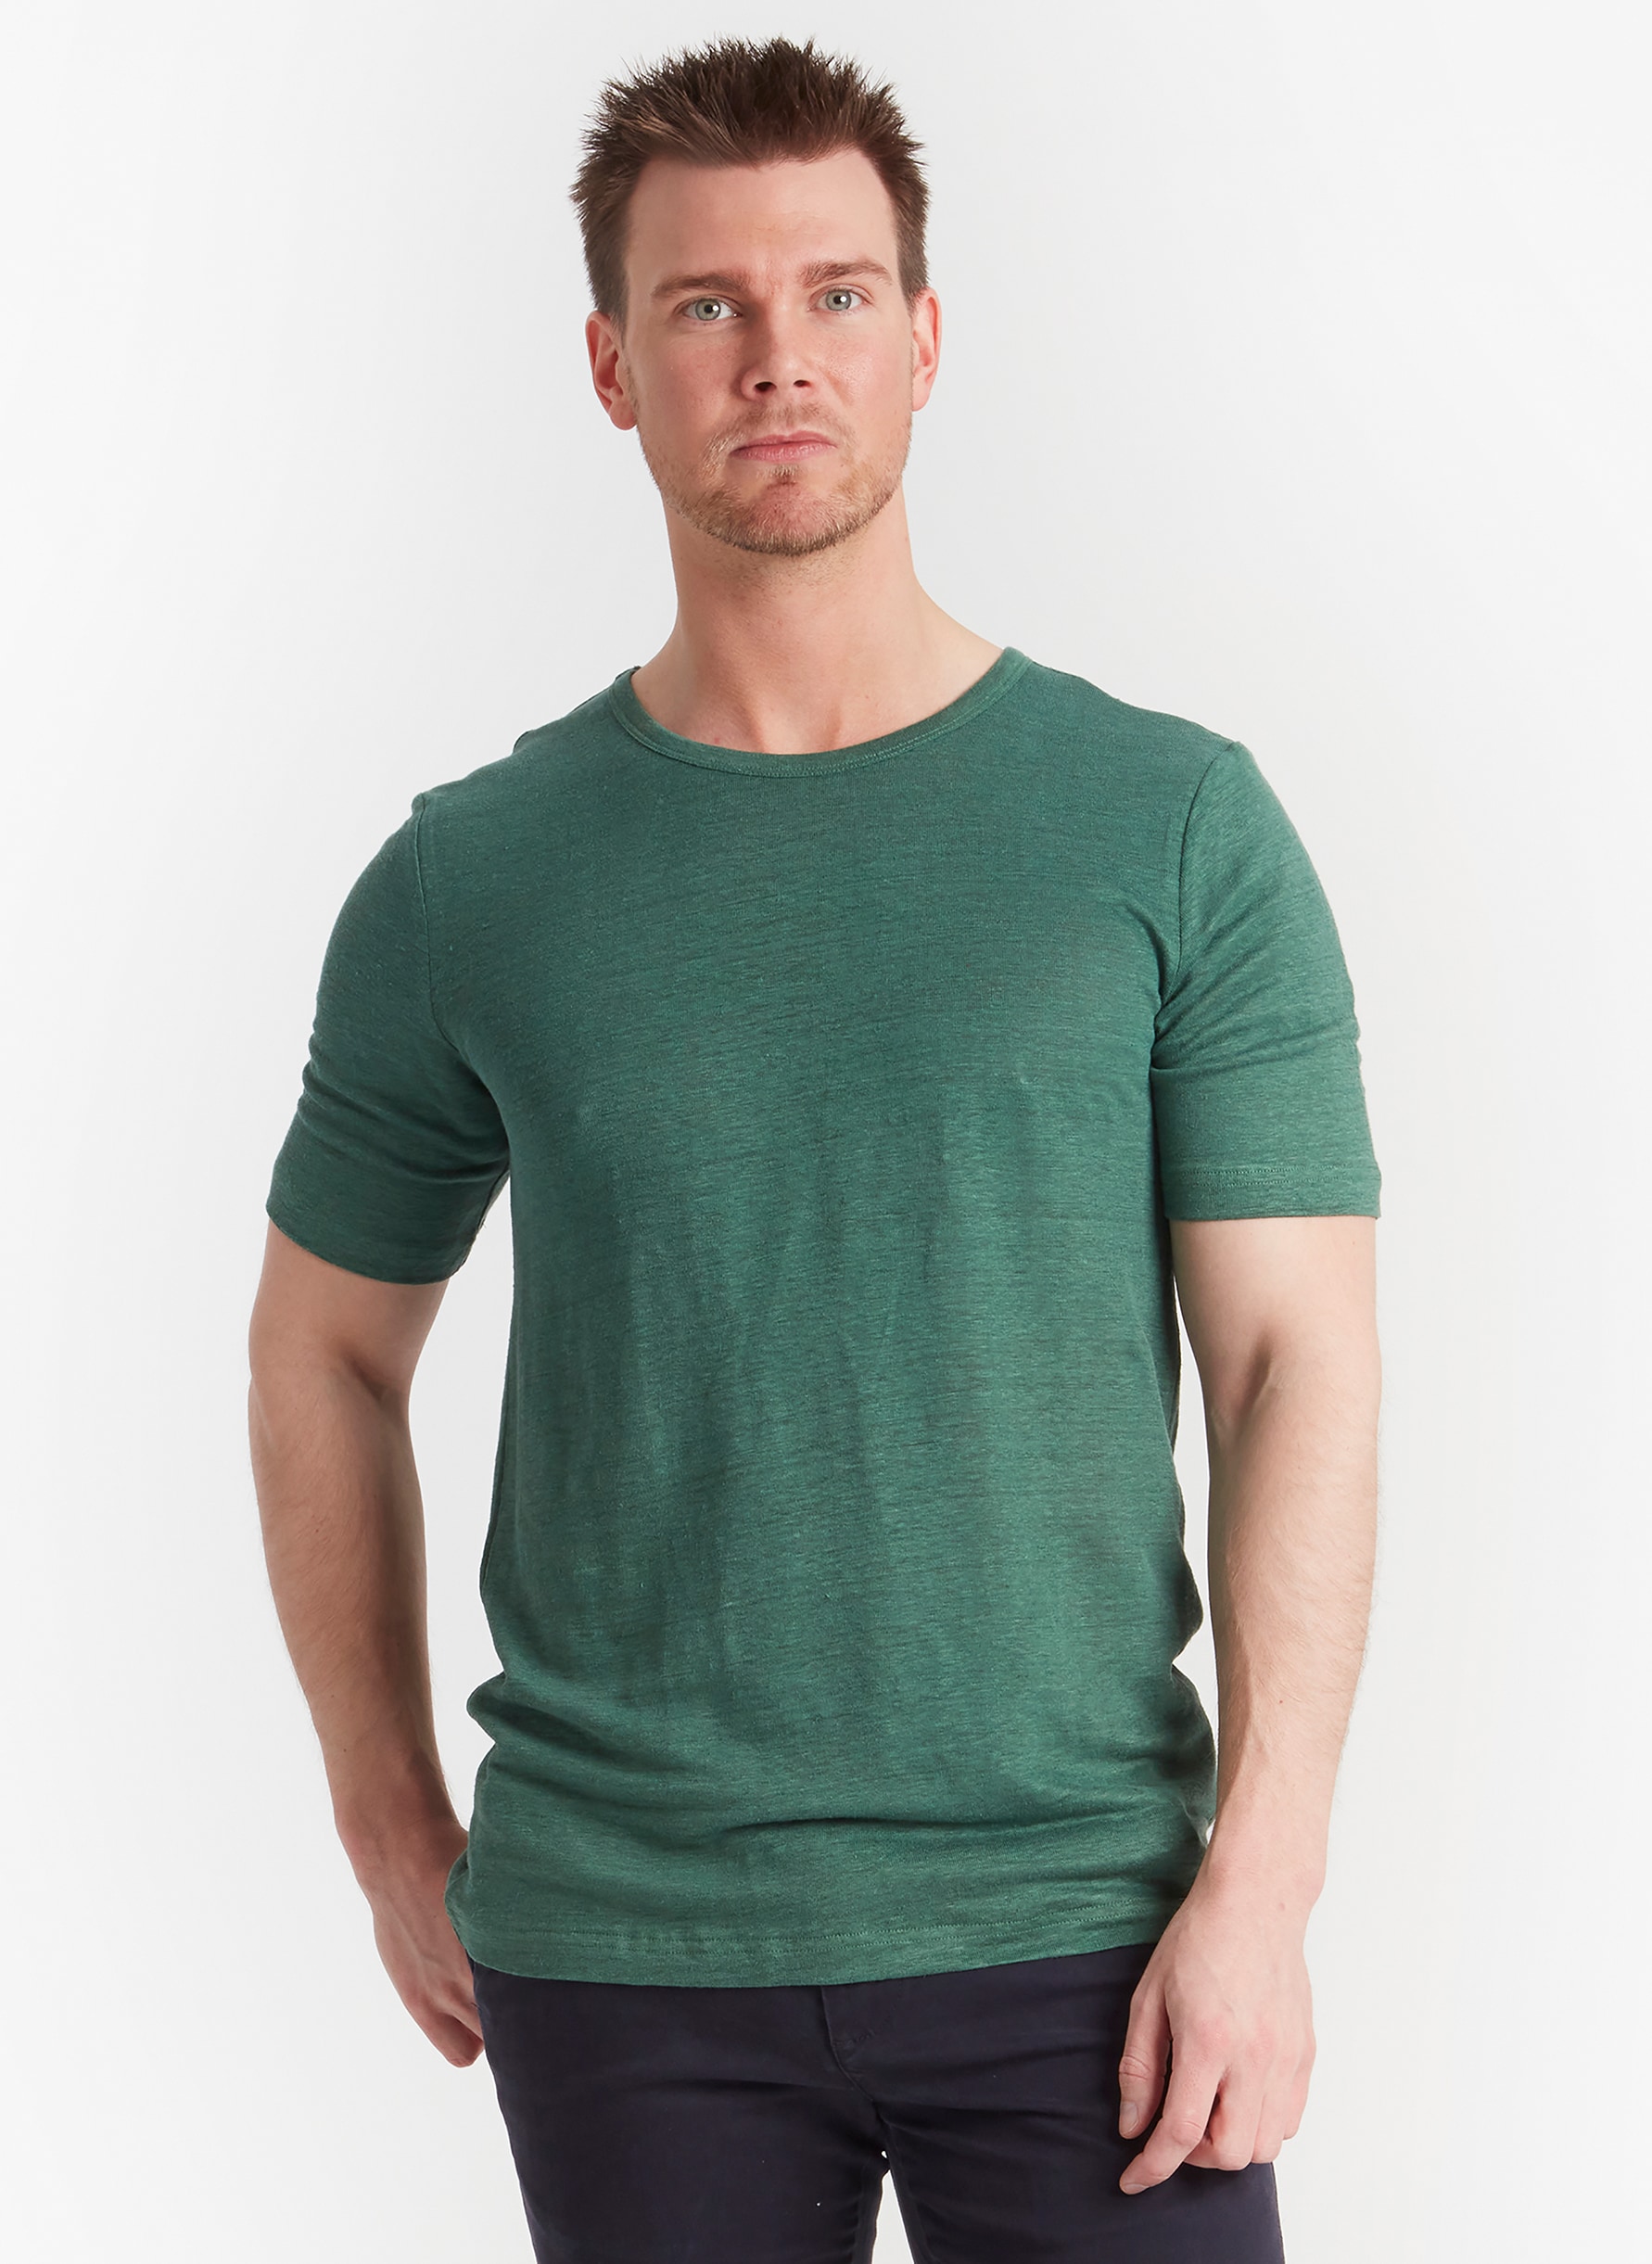 T-shirt Silk/Hemp Green